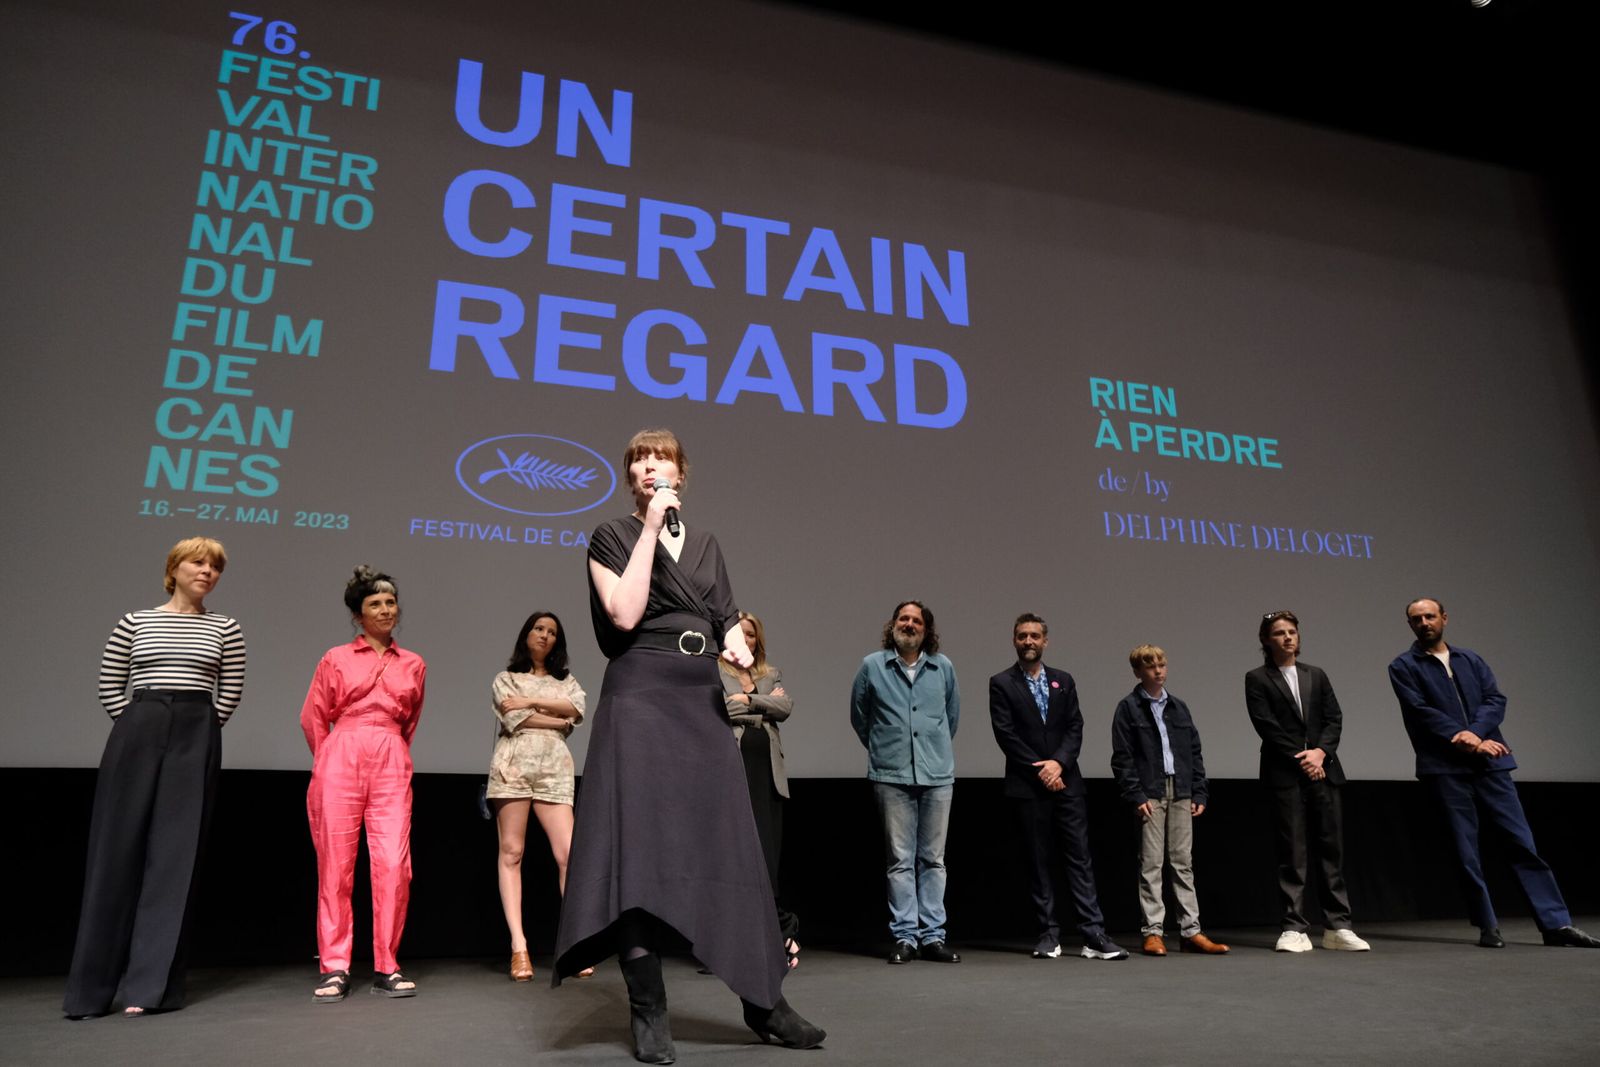 RIEN À PERDRE film cast - Screening - Festival de Cannes